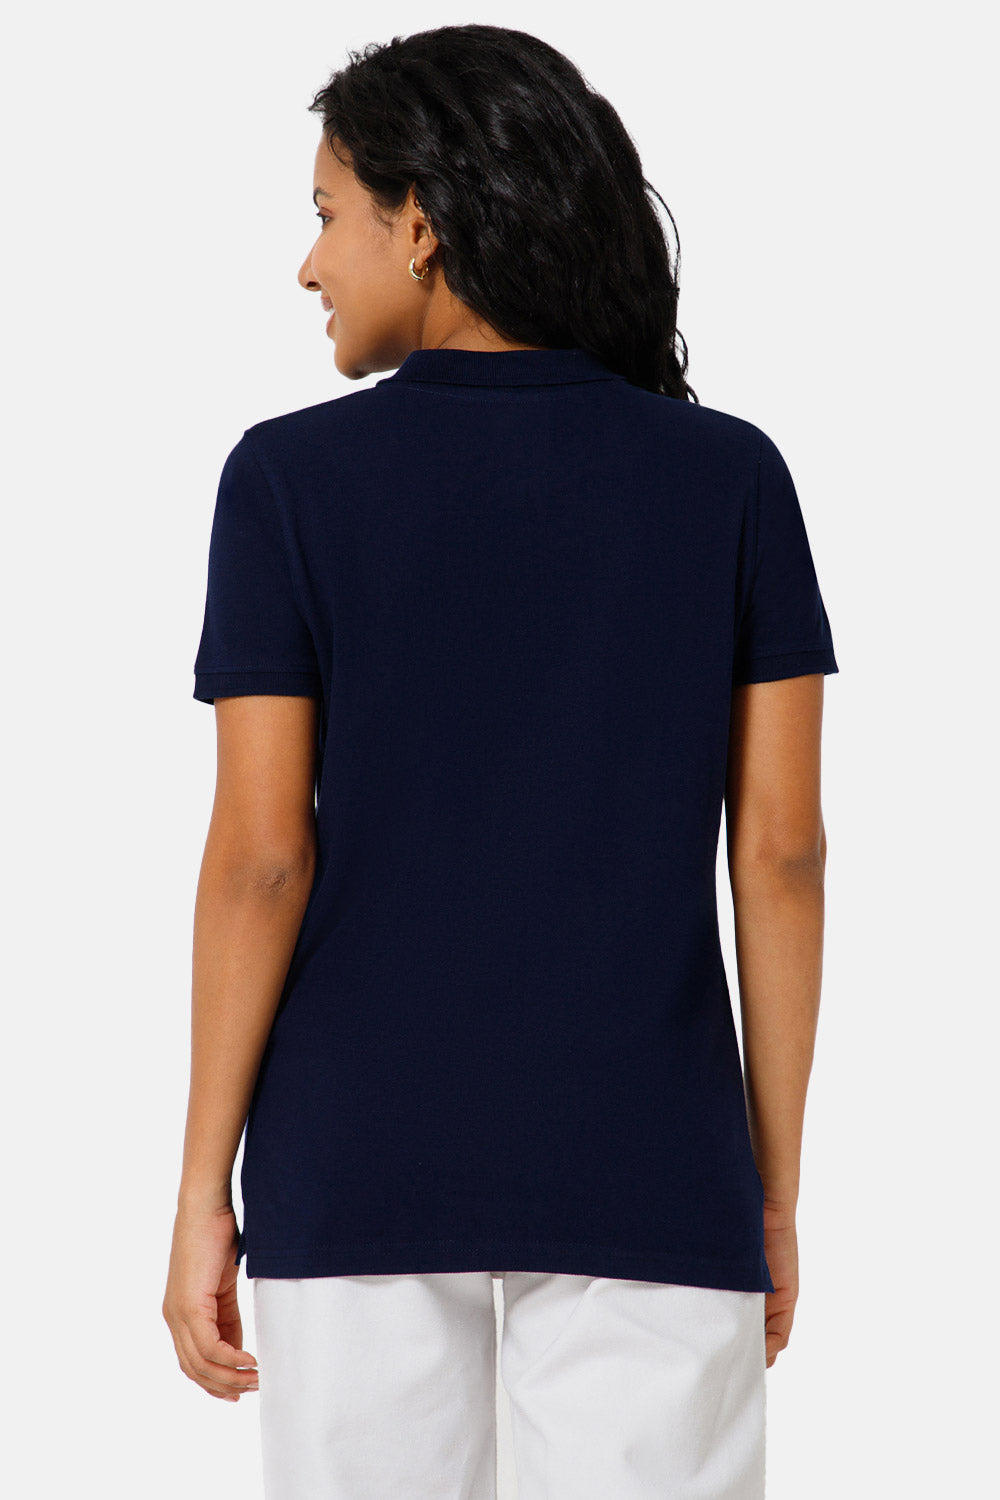 Jusperf Women Half Sleeve Polo Neck T-shirt  - Blue - SJD6